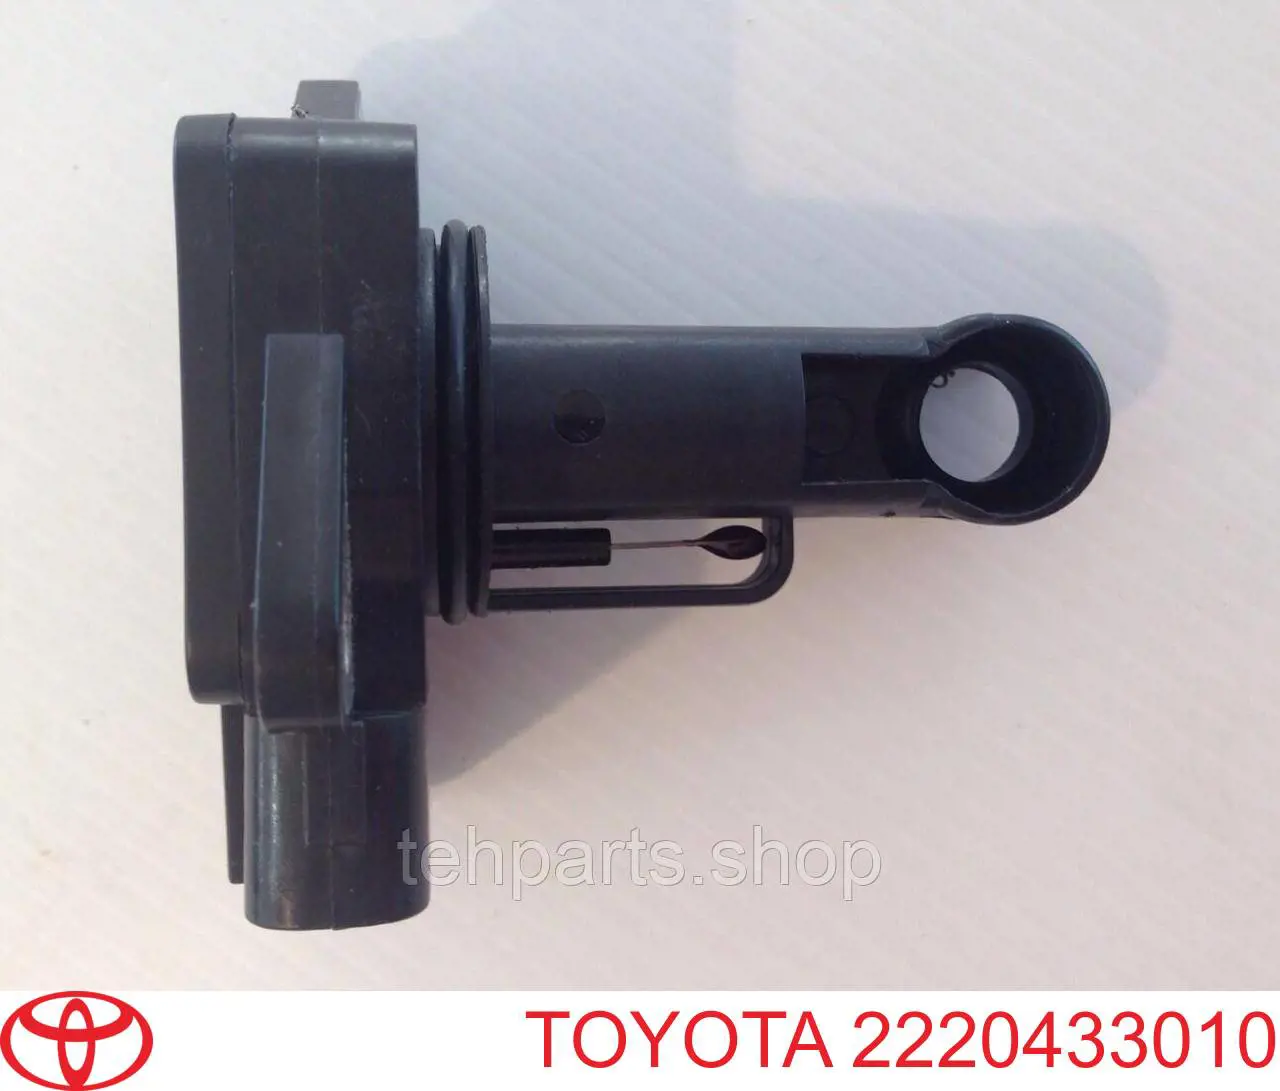 2220433010 Toyota sensor de fluxo (consumo de ar, medidor de consumo M.A.F. - (Mass Airflow))